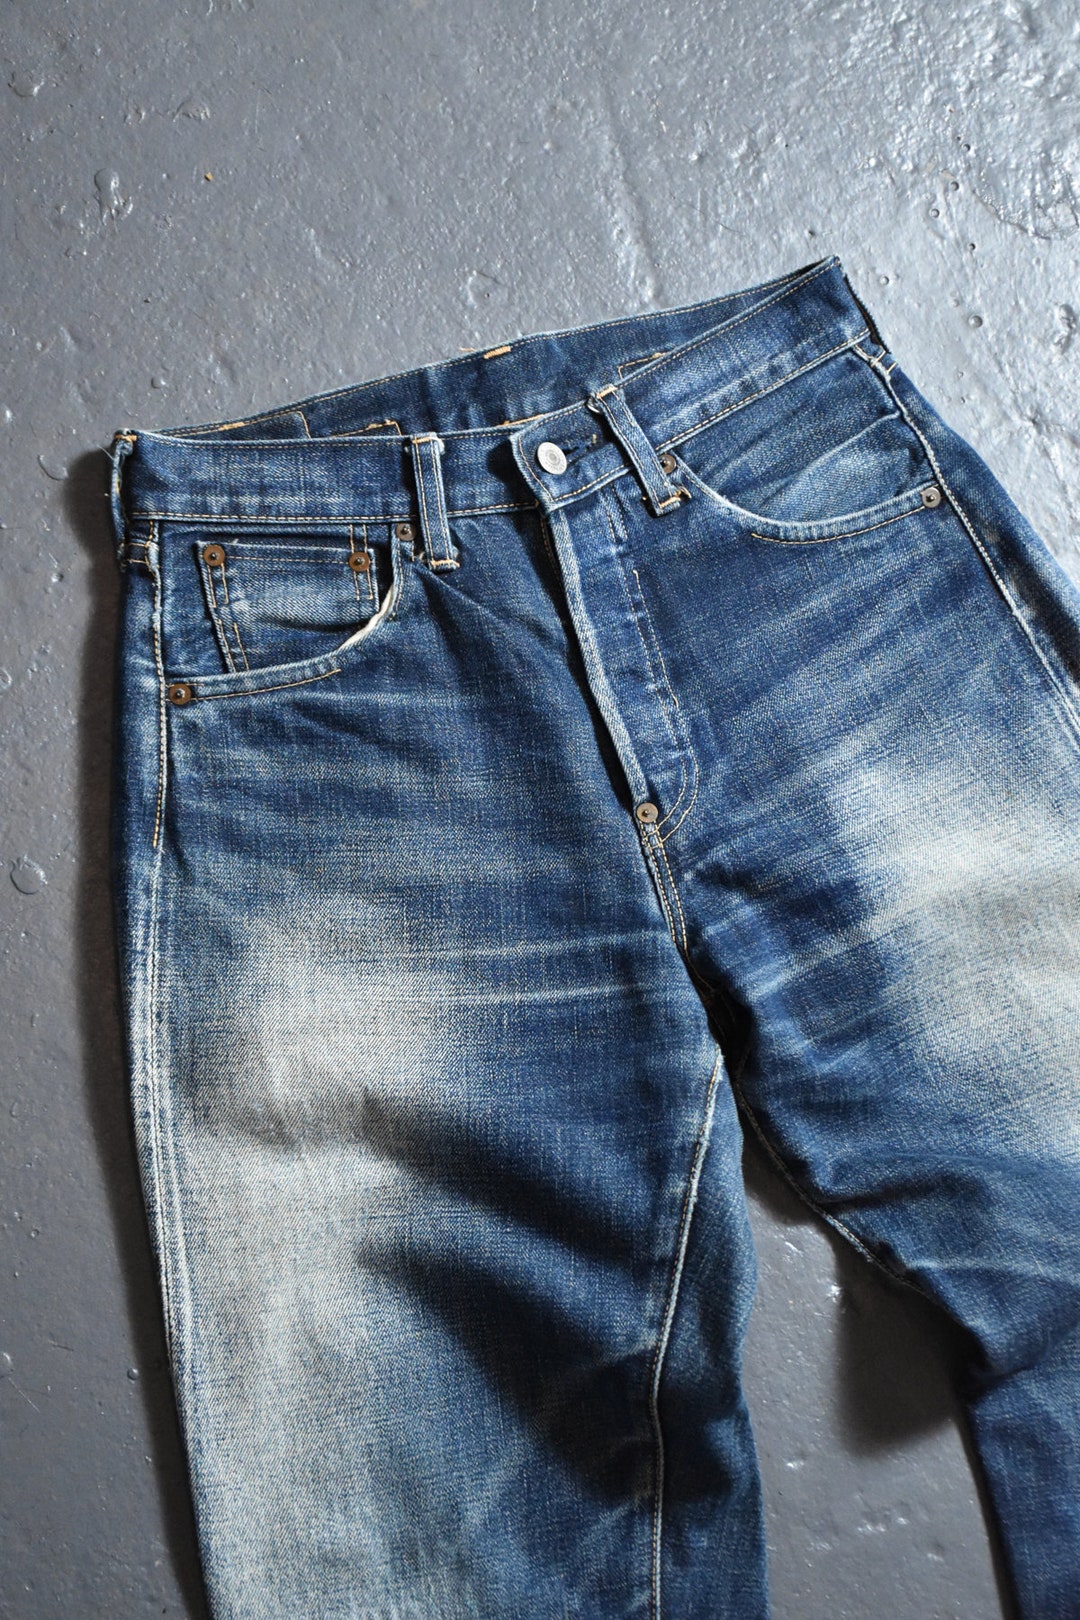 Levis LVC 37501 Vintage Big E Selvedge Denim Jeans - Etsy